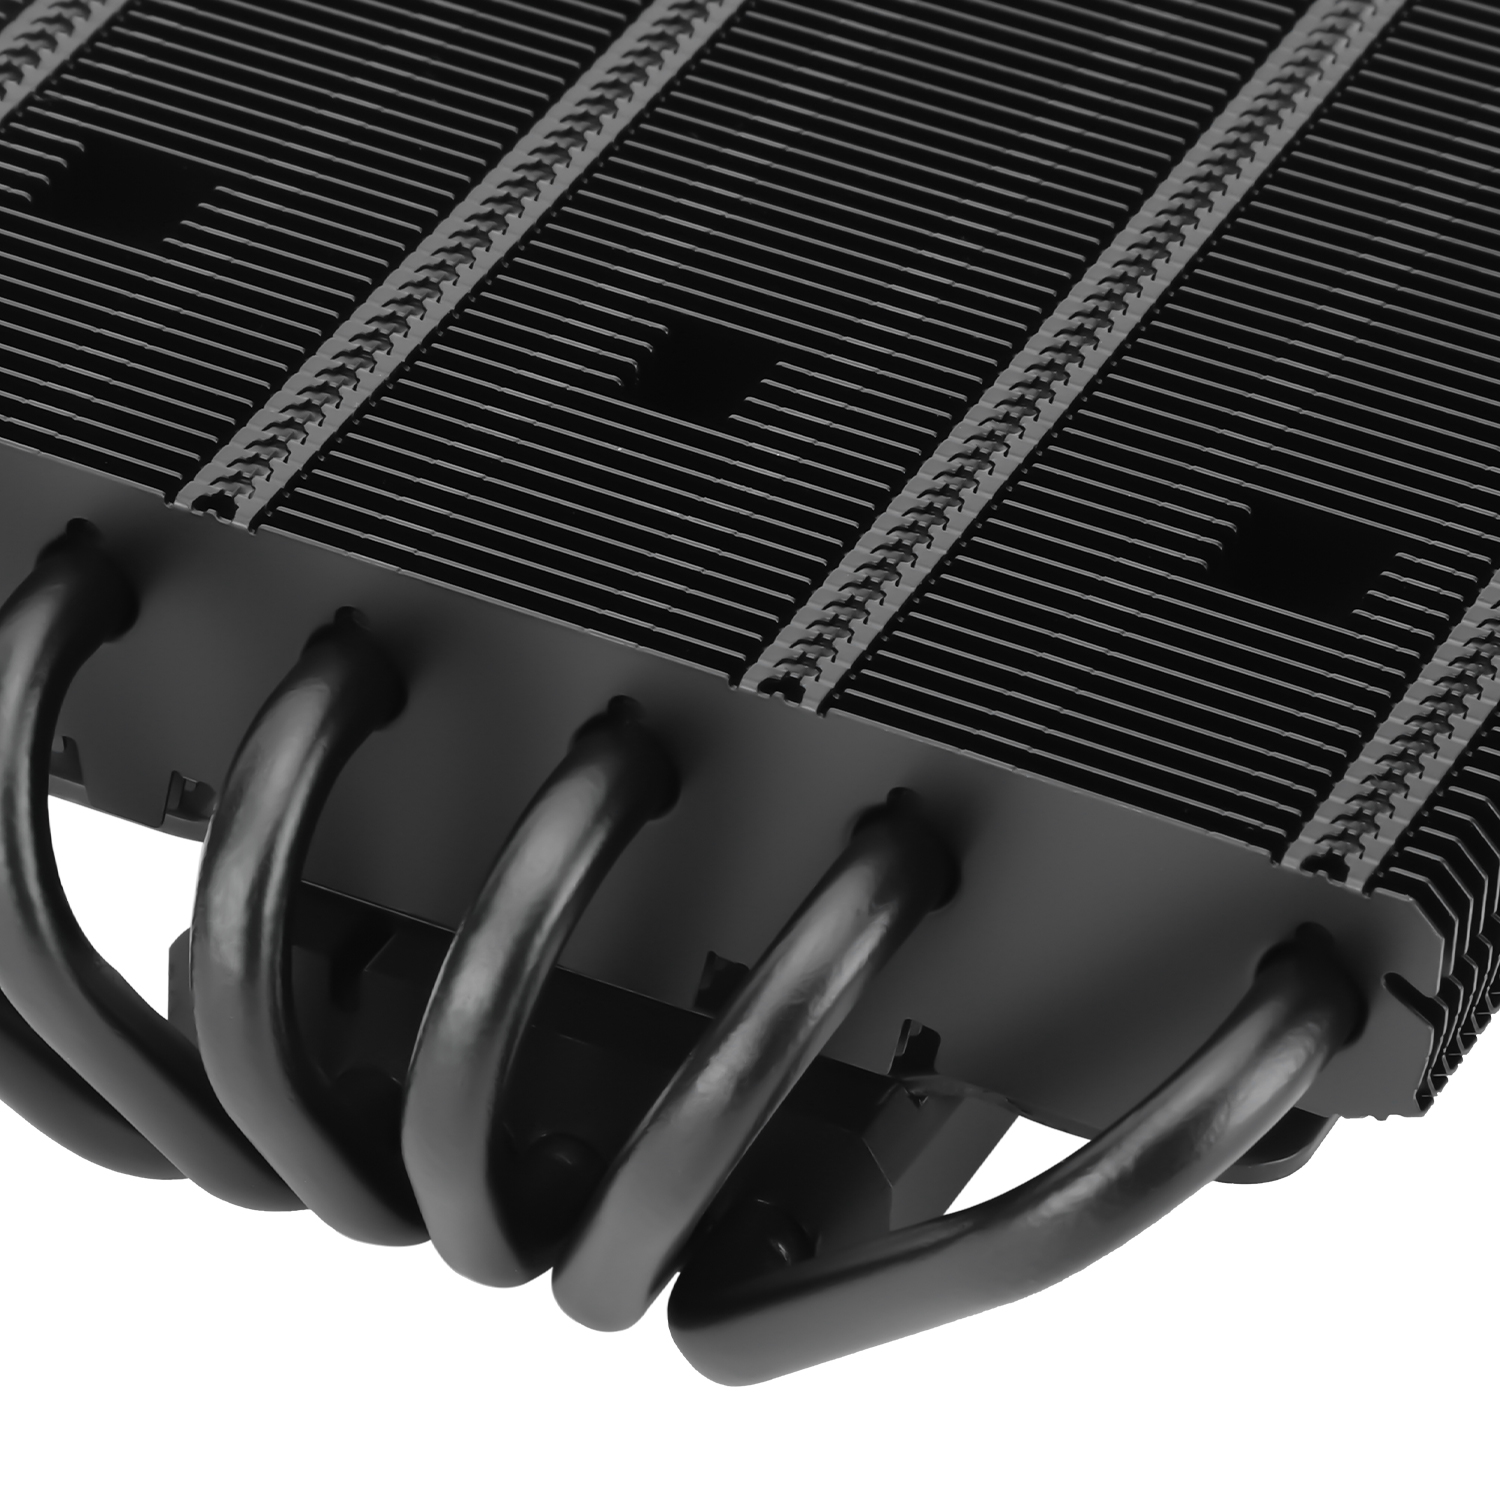 Thermalright propose l'AXP120-X67, un ventirad top-flow de 67 mm de haut